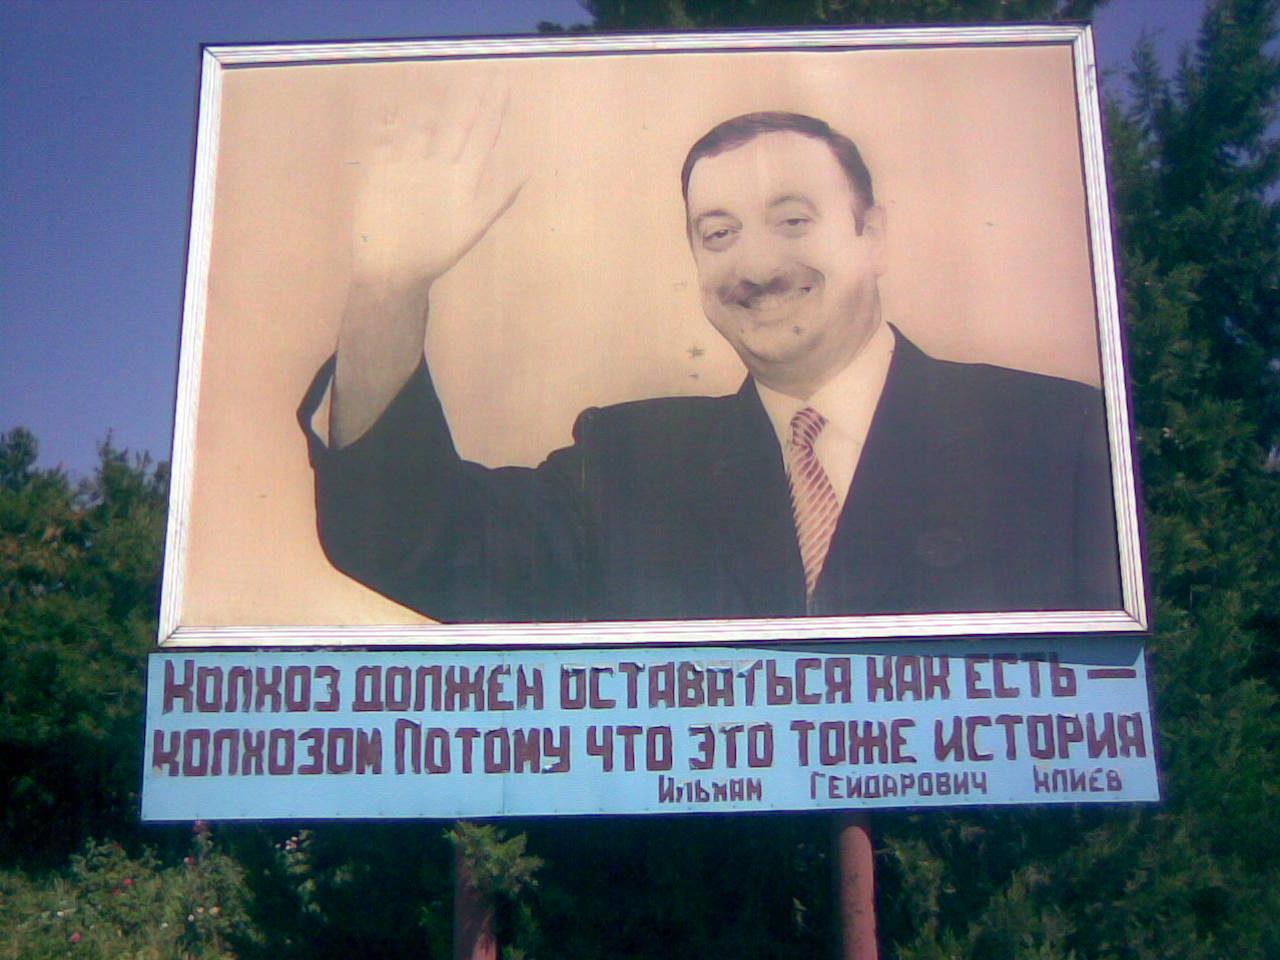 Я надеюсь, что переговоры дадут хорошие результаты - Алиев